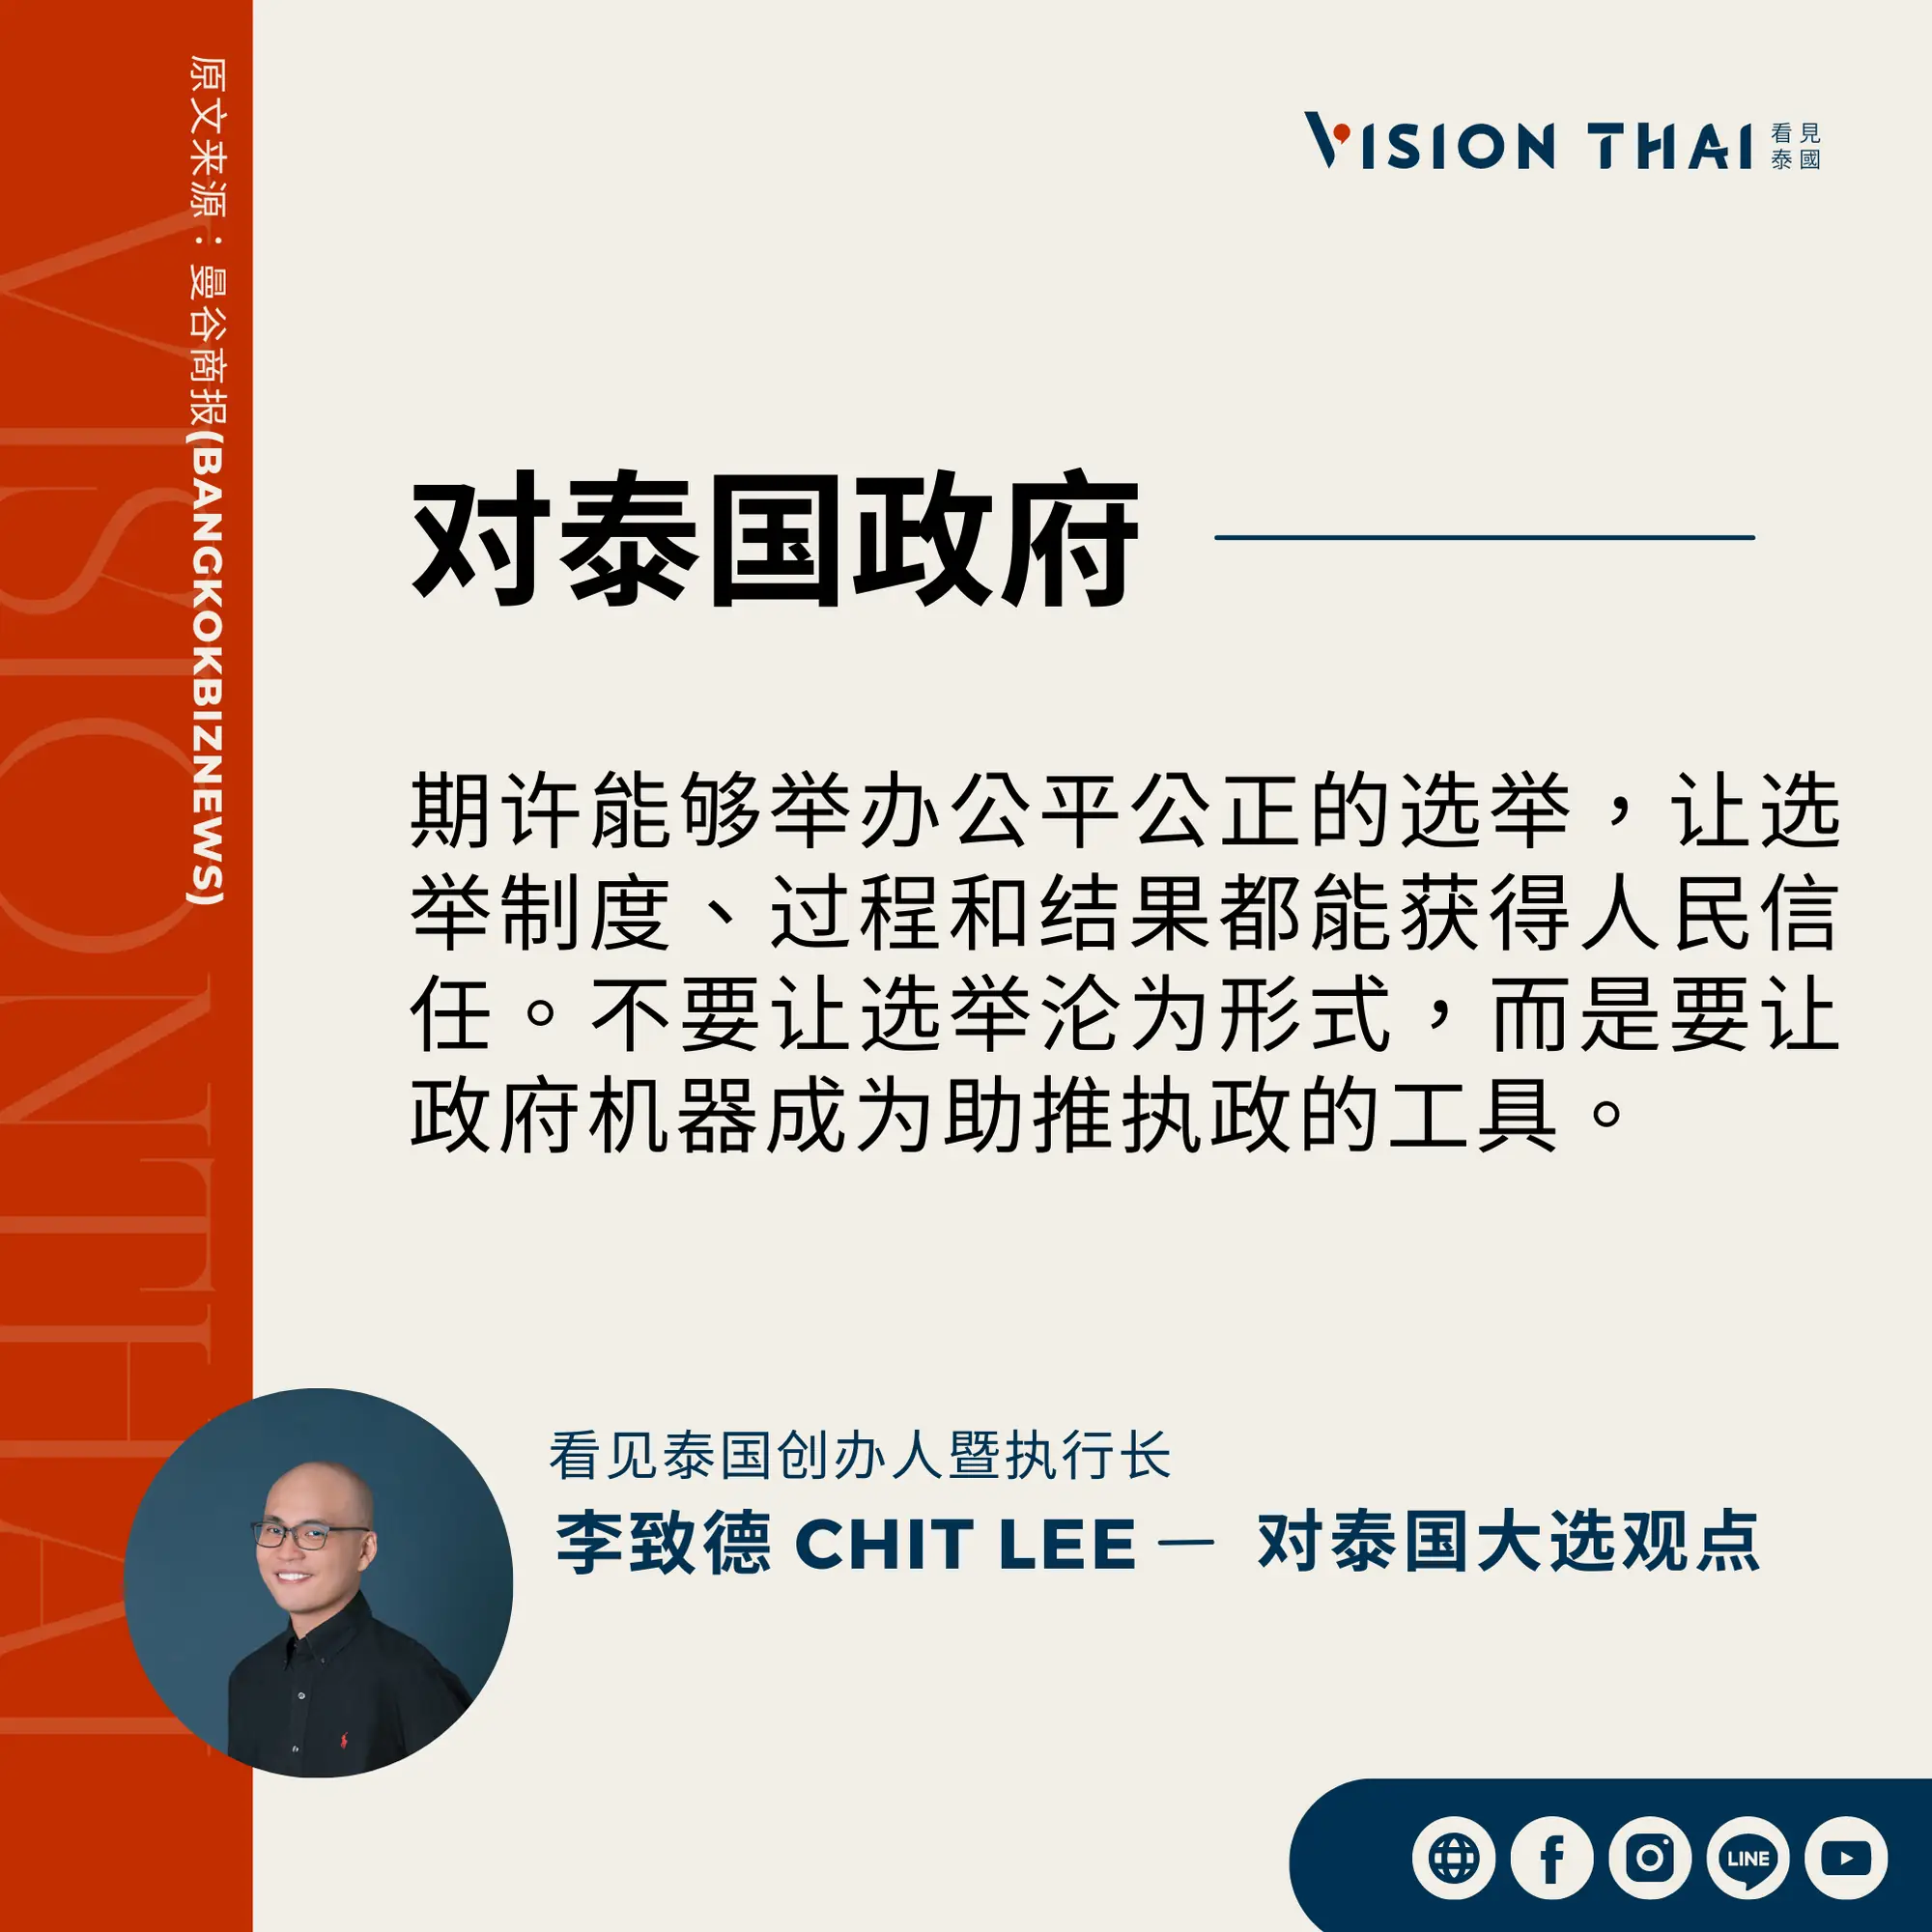 《曼谷商报》采访Vision Thai 看见泰国媒体创办人暨执行长李致德(Chit Lee)对泰国政府的期许（来源：看见泰国制图）